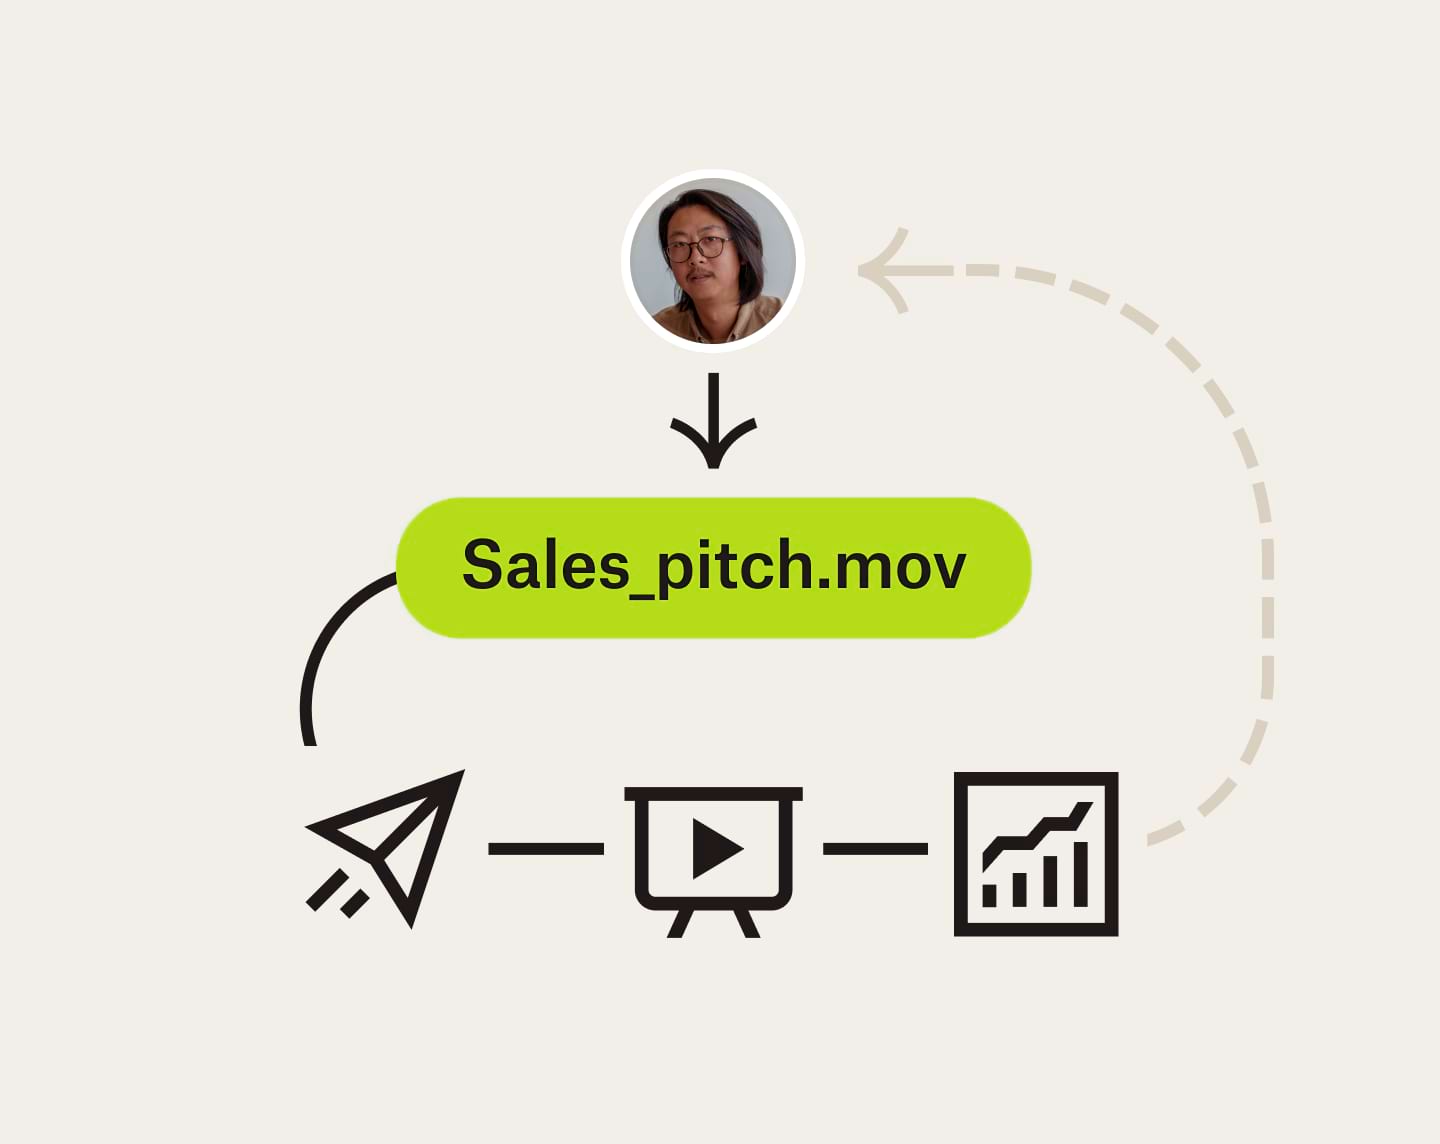 Ett flödesschema som visar hur en säljvideo kan skickas, ses, och bidra till företagets tillväxt.